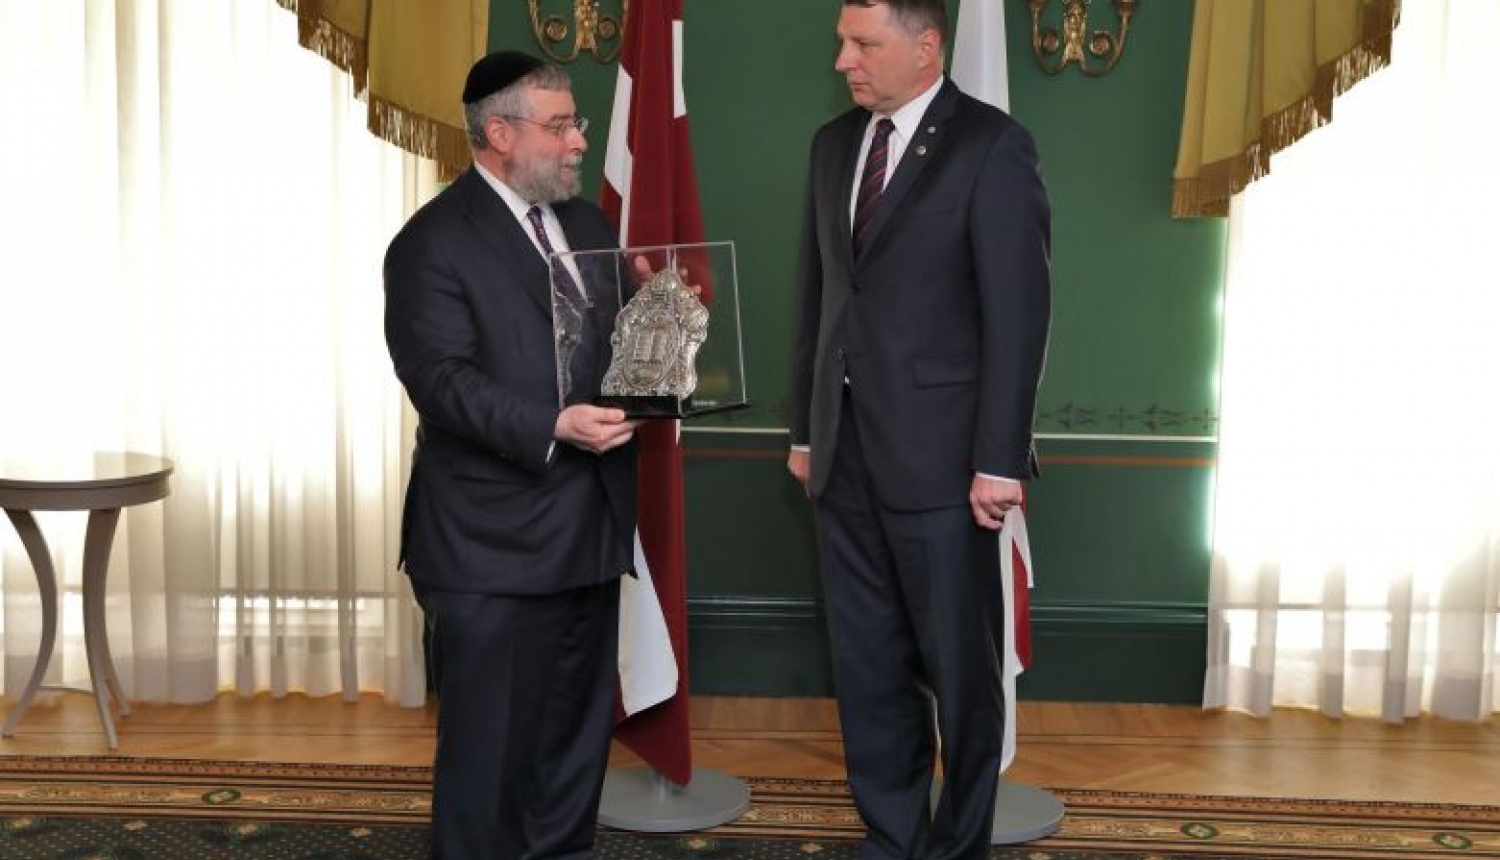 Valsts prezidents saņem Eiropas rabīnu konferences atzinības balvu par reliģiskās brīvības nodrošināšanu un ebreju kopienas atbalstu Latvijā